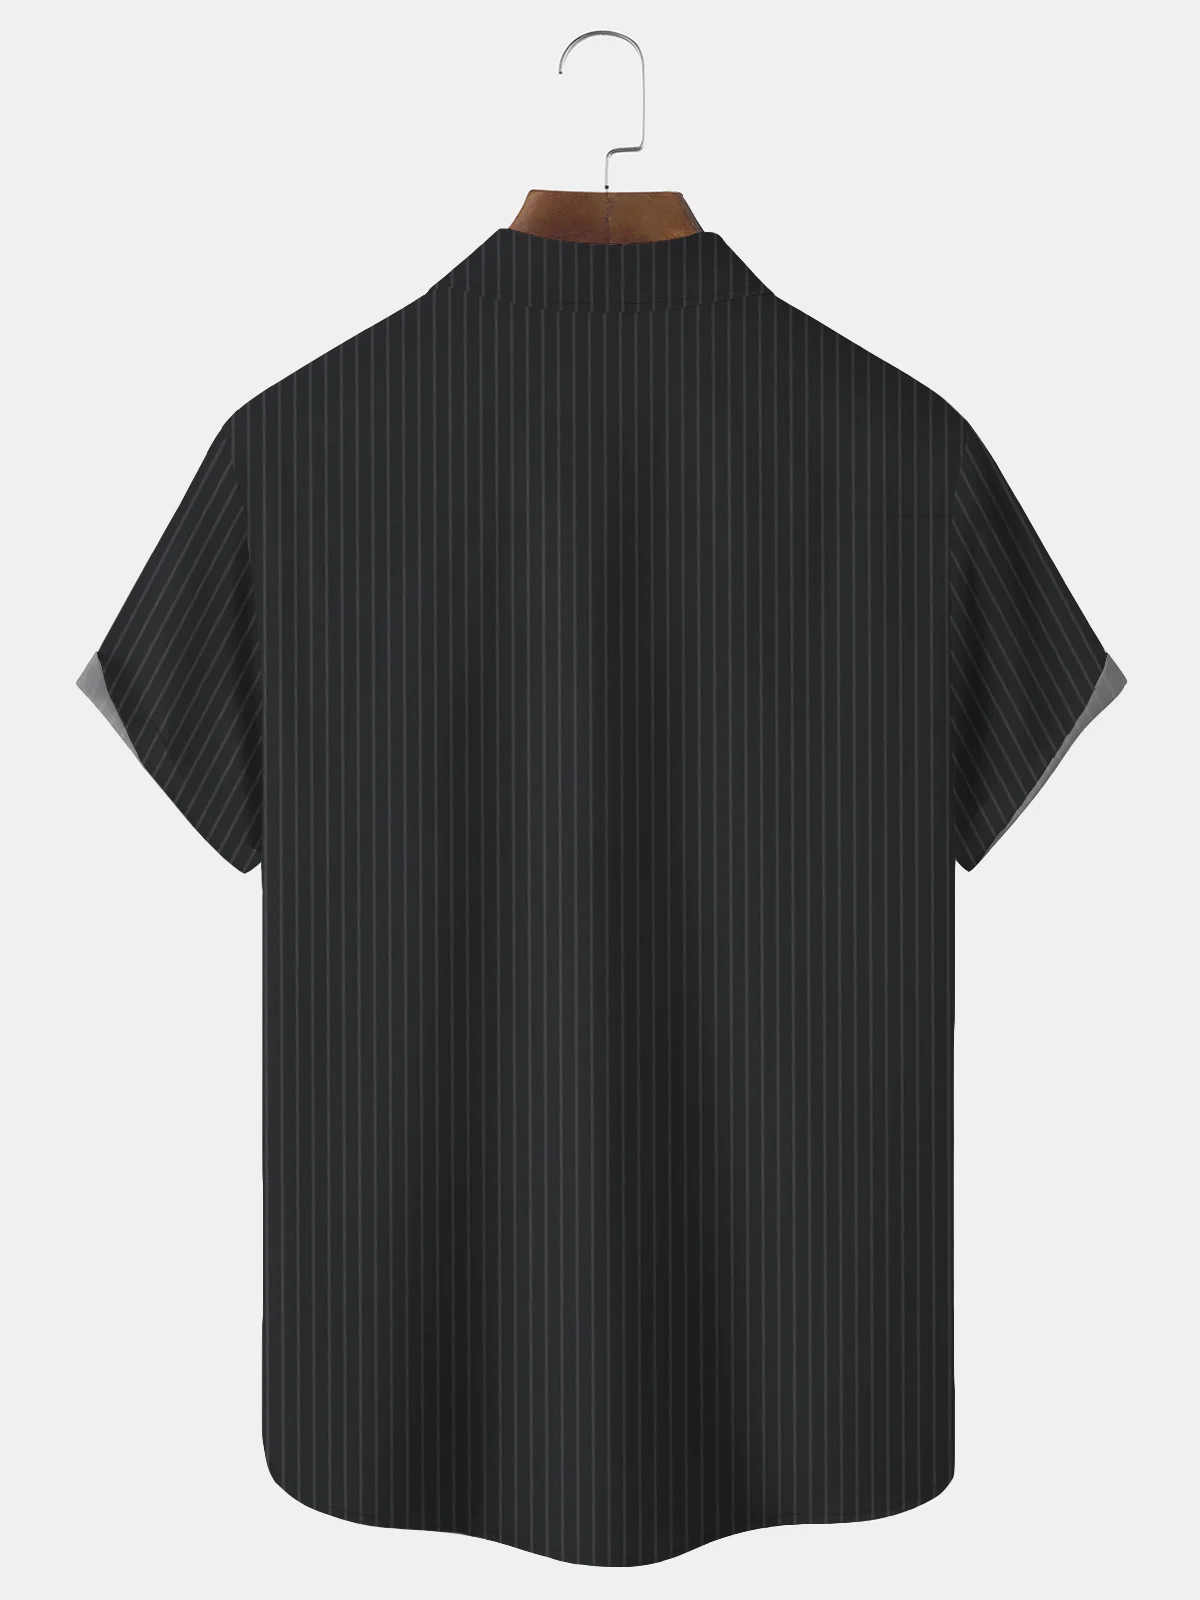 Royaura Casual Basics Striped Print Beach Men's Hawaiian Oversized Short Sleeve Shirt with Pockets